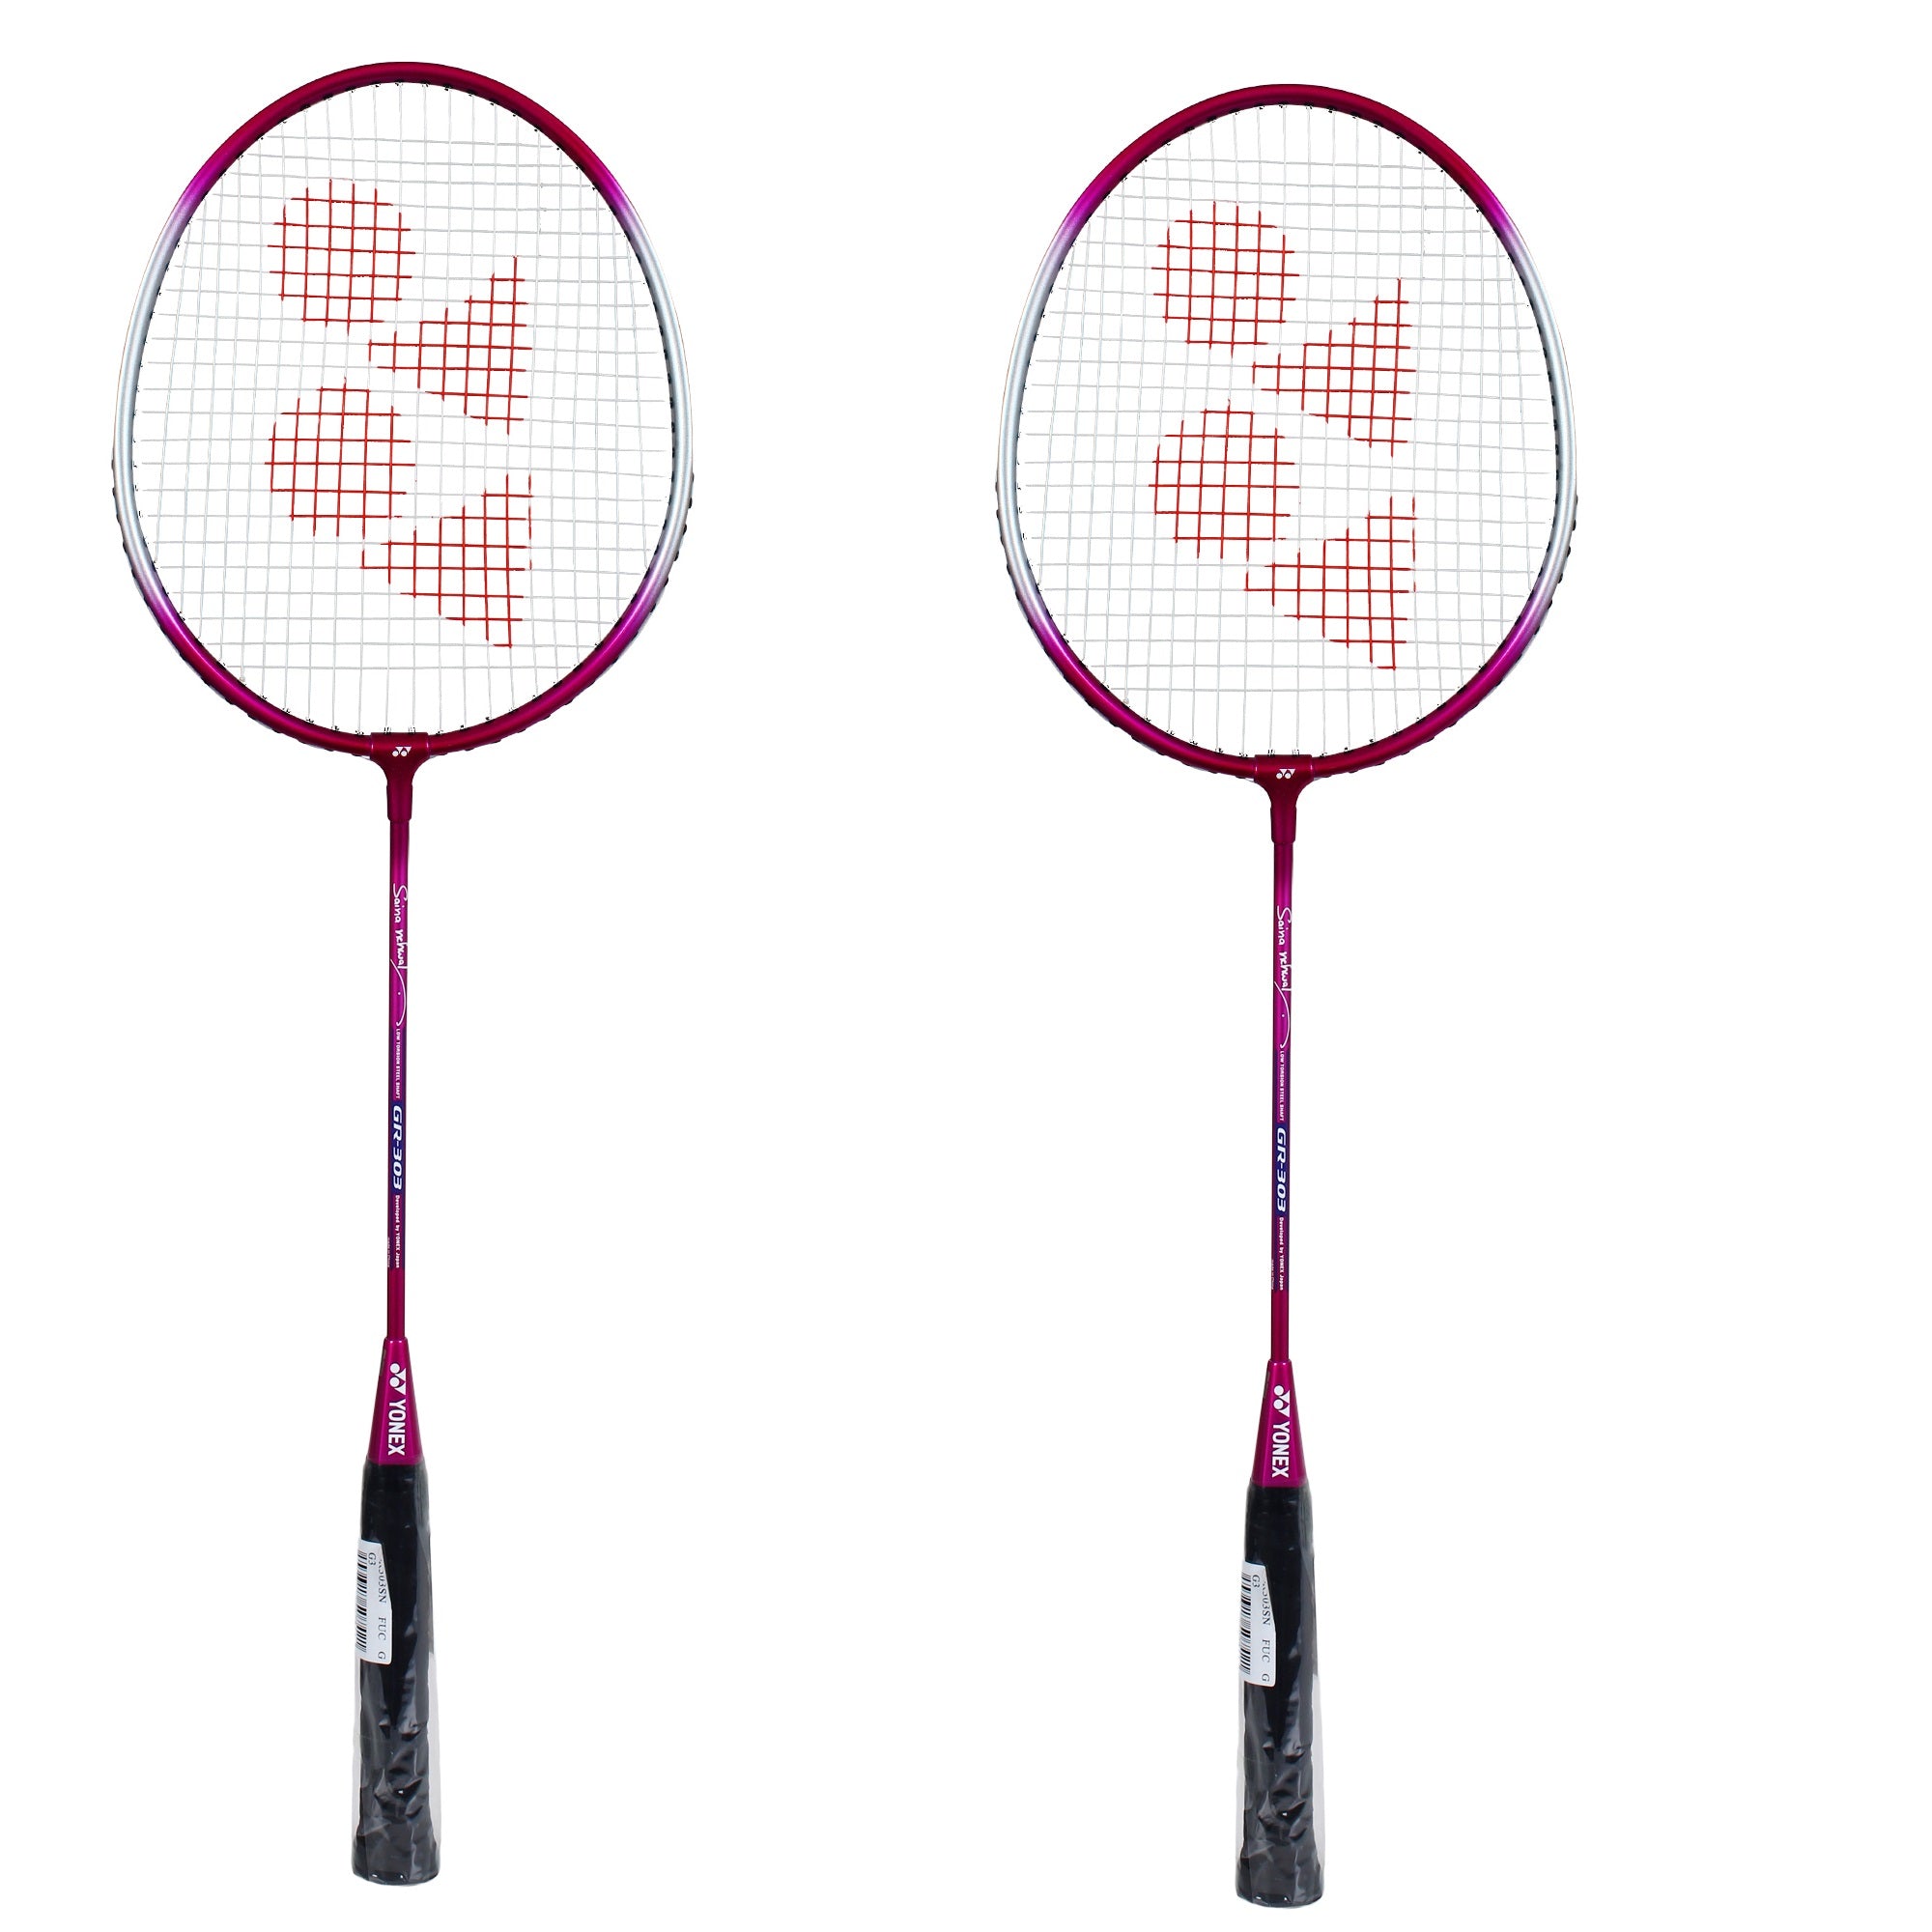 Yonex GR 303 Saina Nehwal Edition Pink Combo Of 2 Rackets Badminton Ra